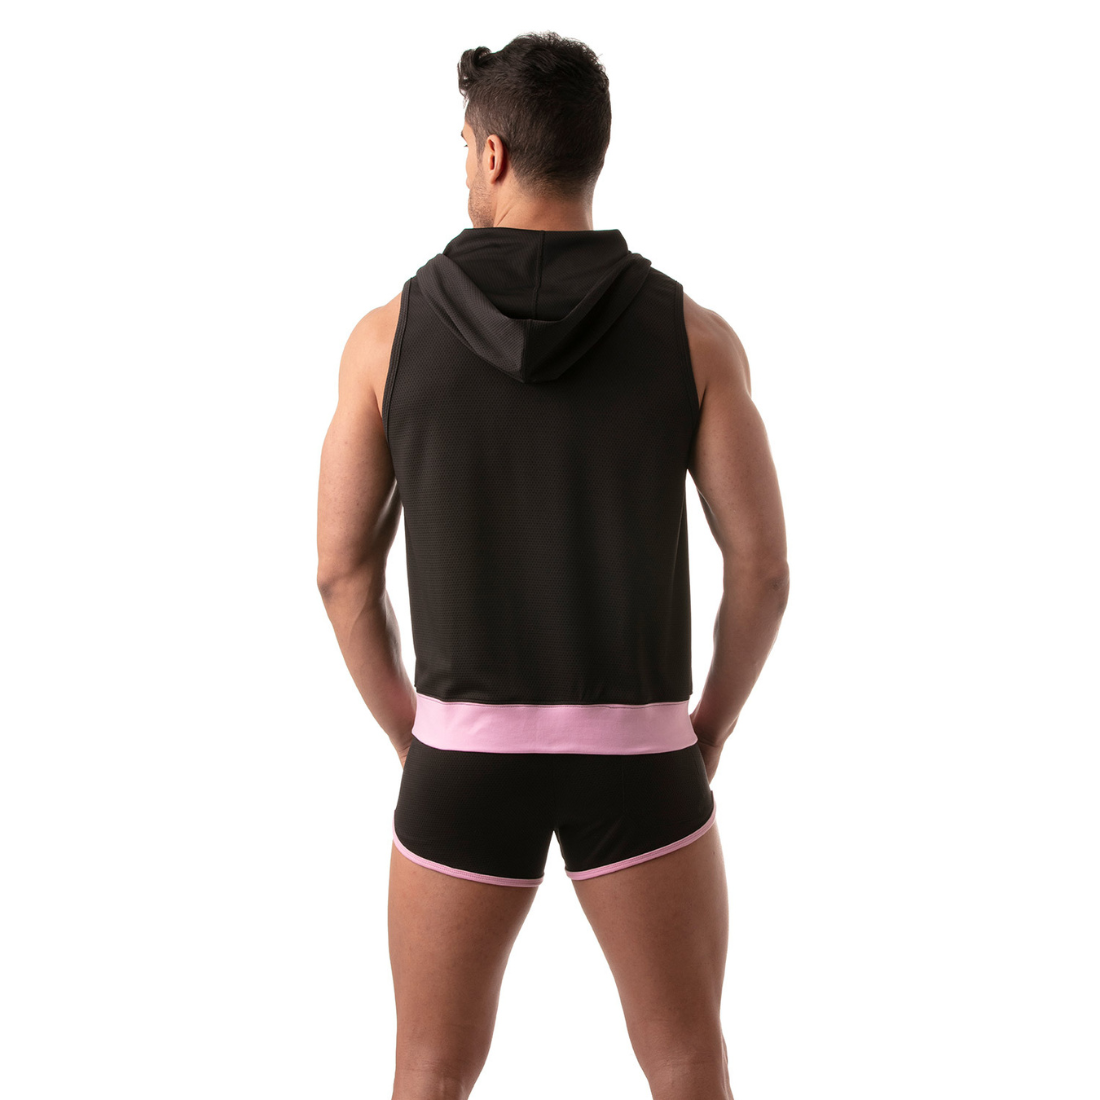 Zwarte hoodie zonder mouwen met roze accenten, ontworpen door het Franse modehuis Tof Paris. Perfect voor gay mannen en te koop bij Flavourez.